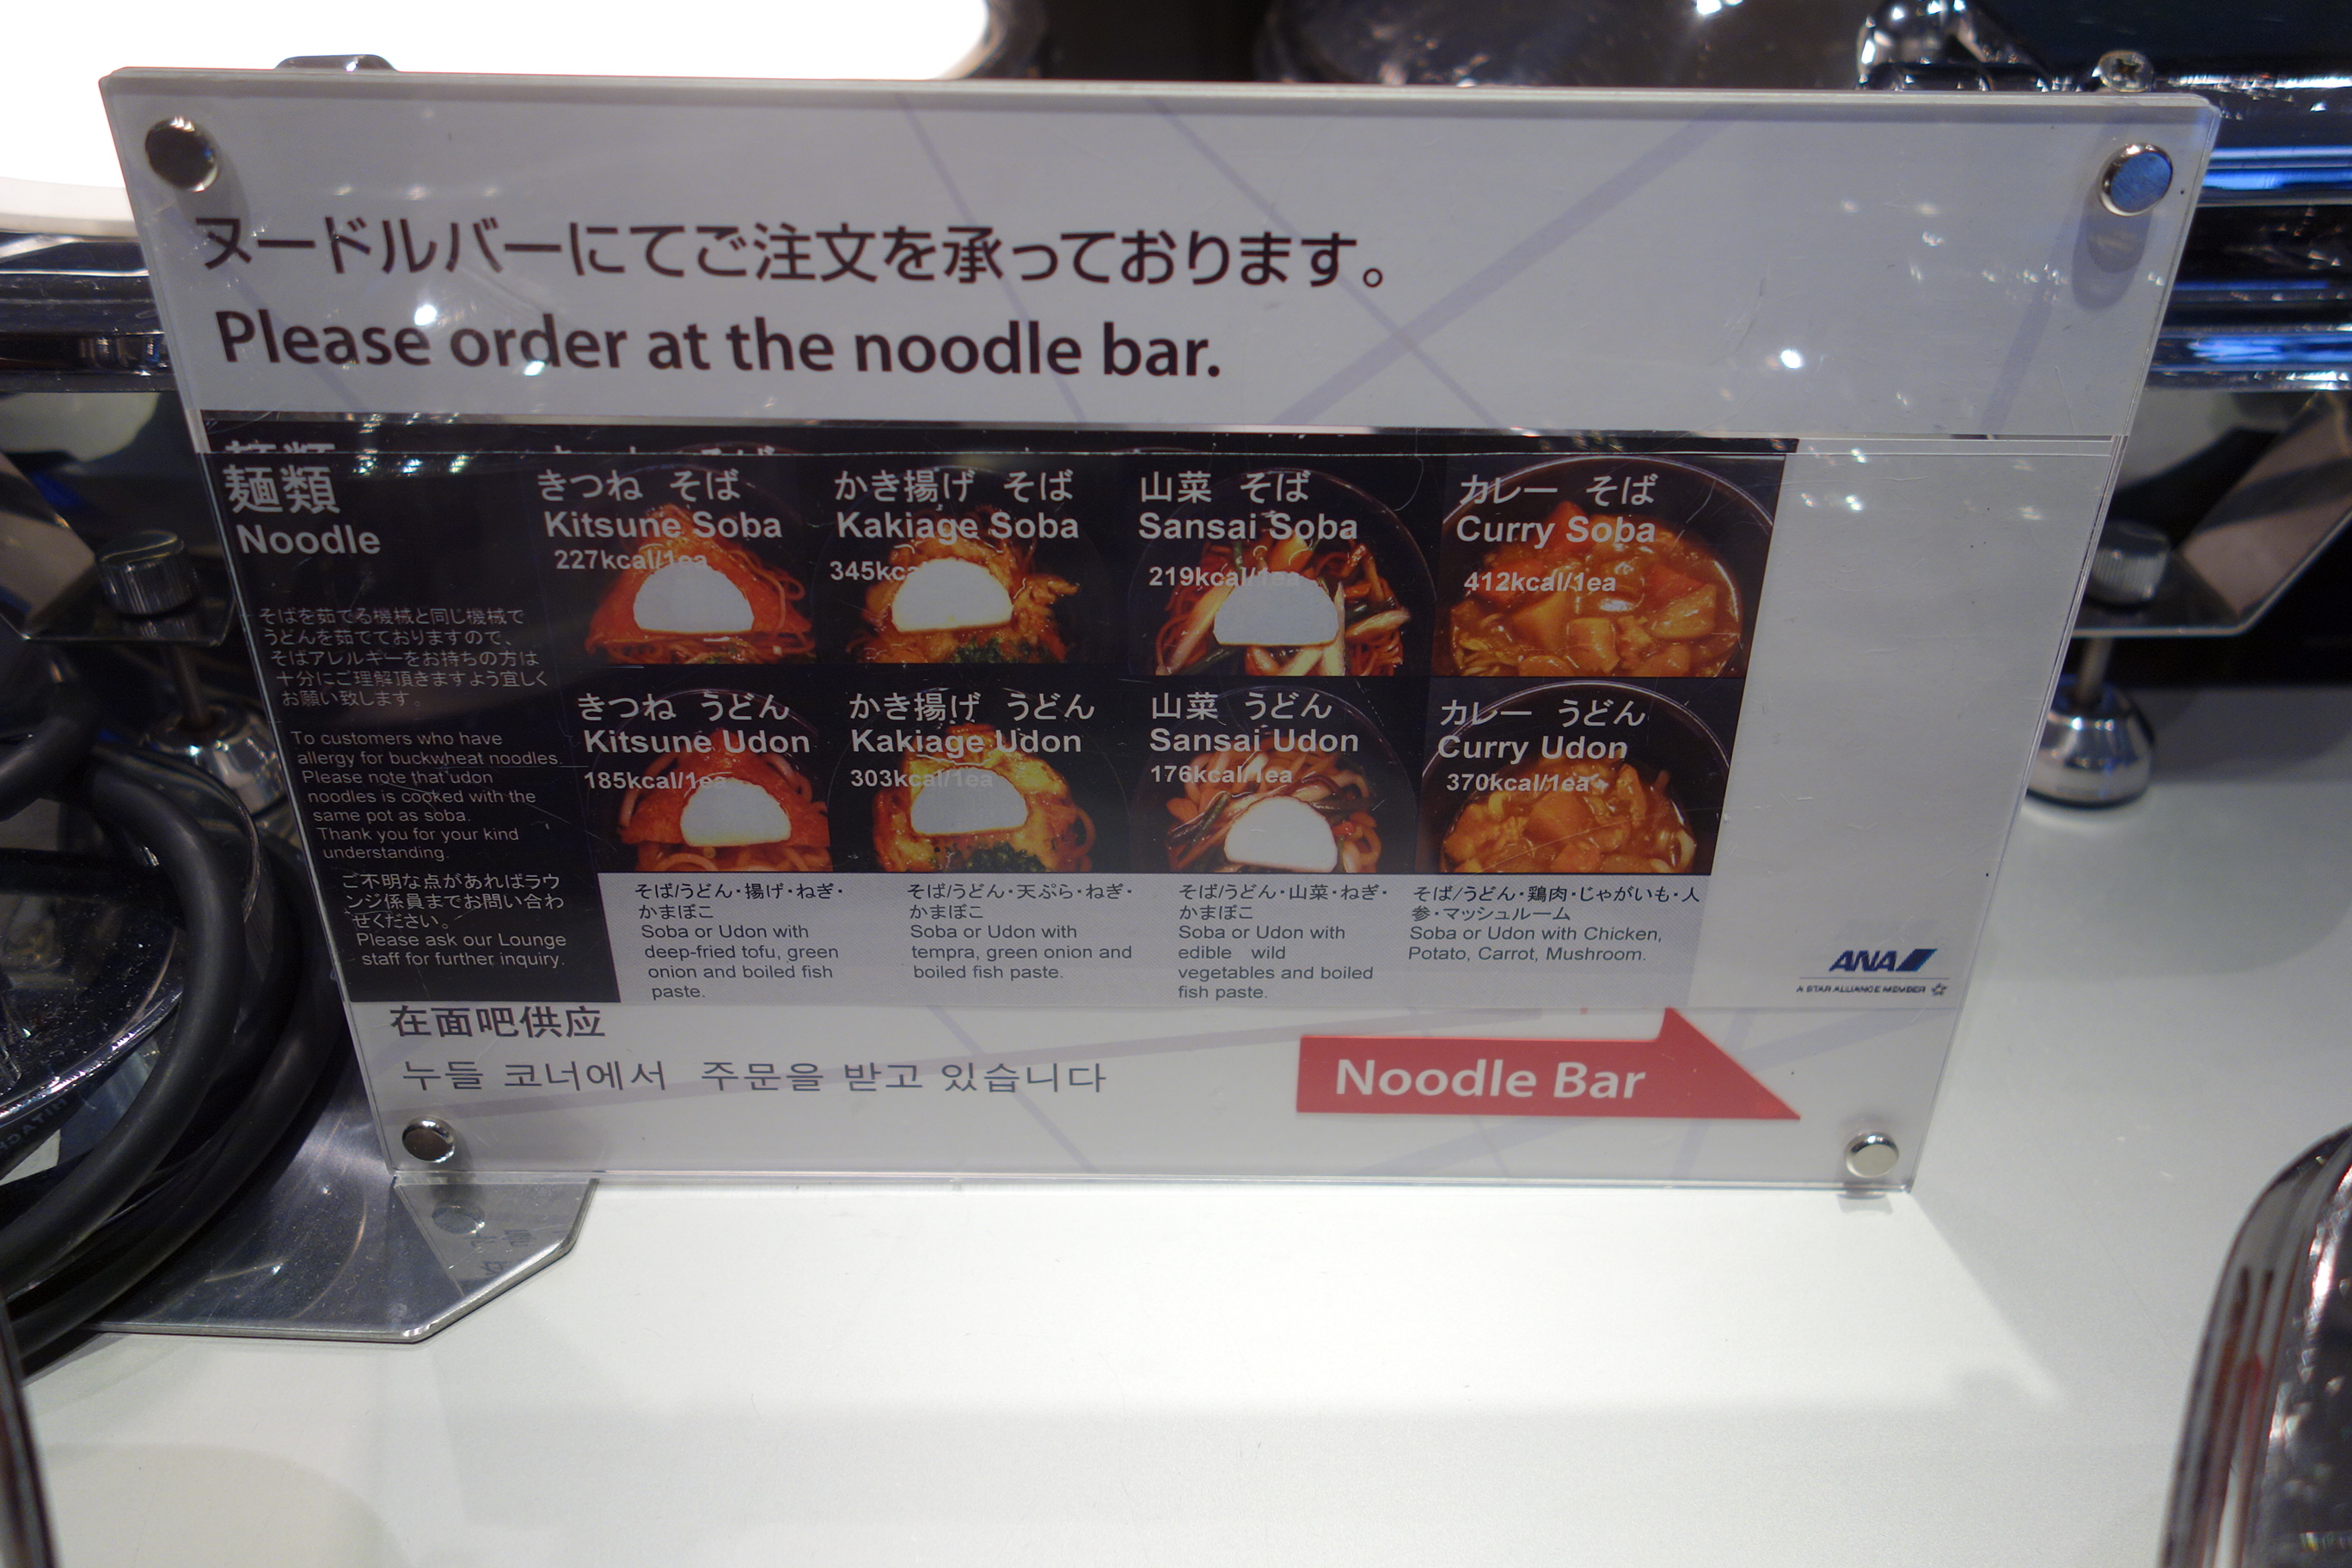 Noodle bar options